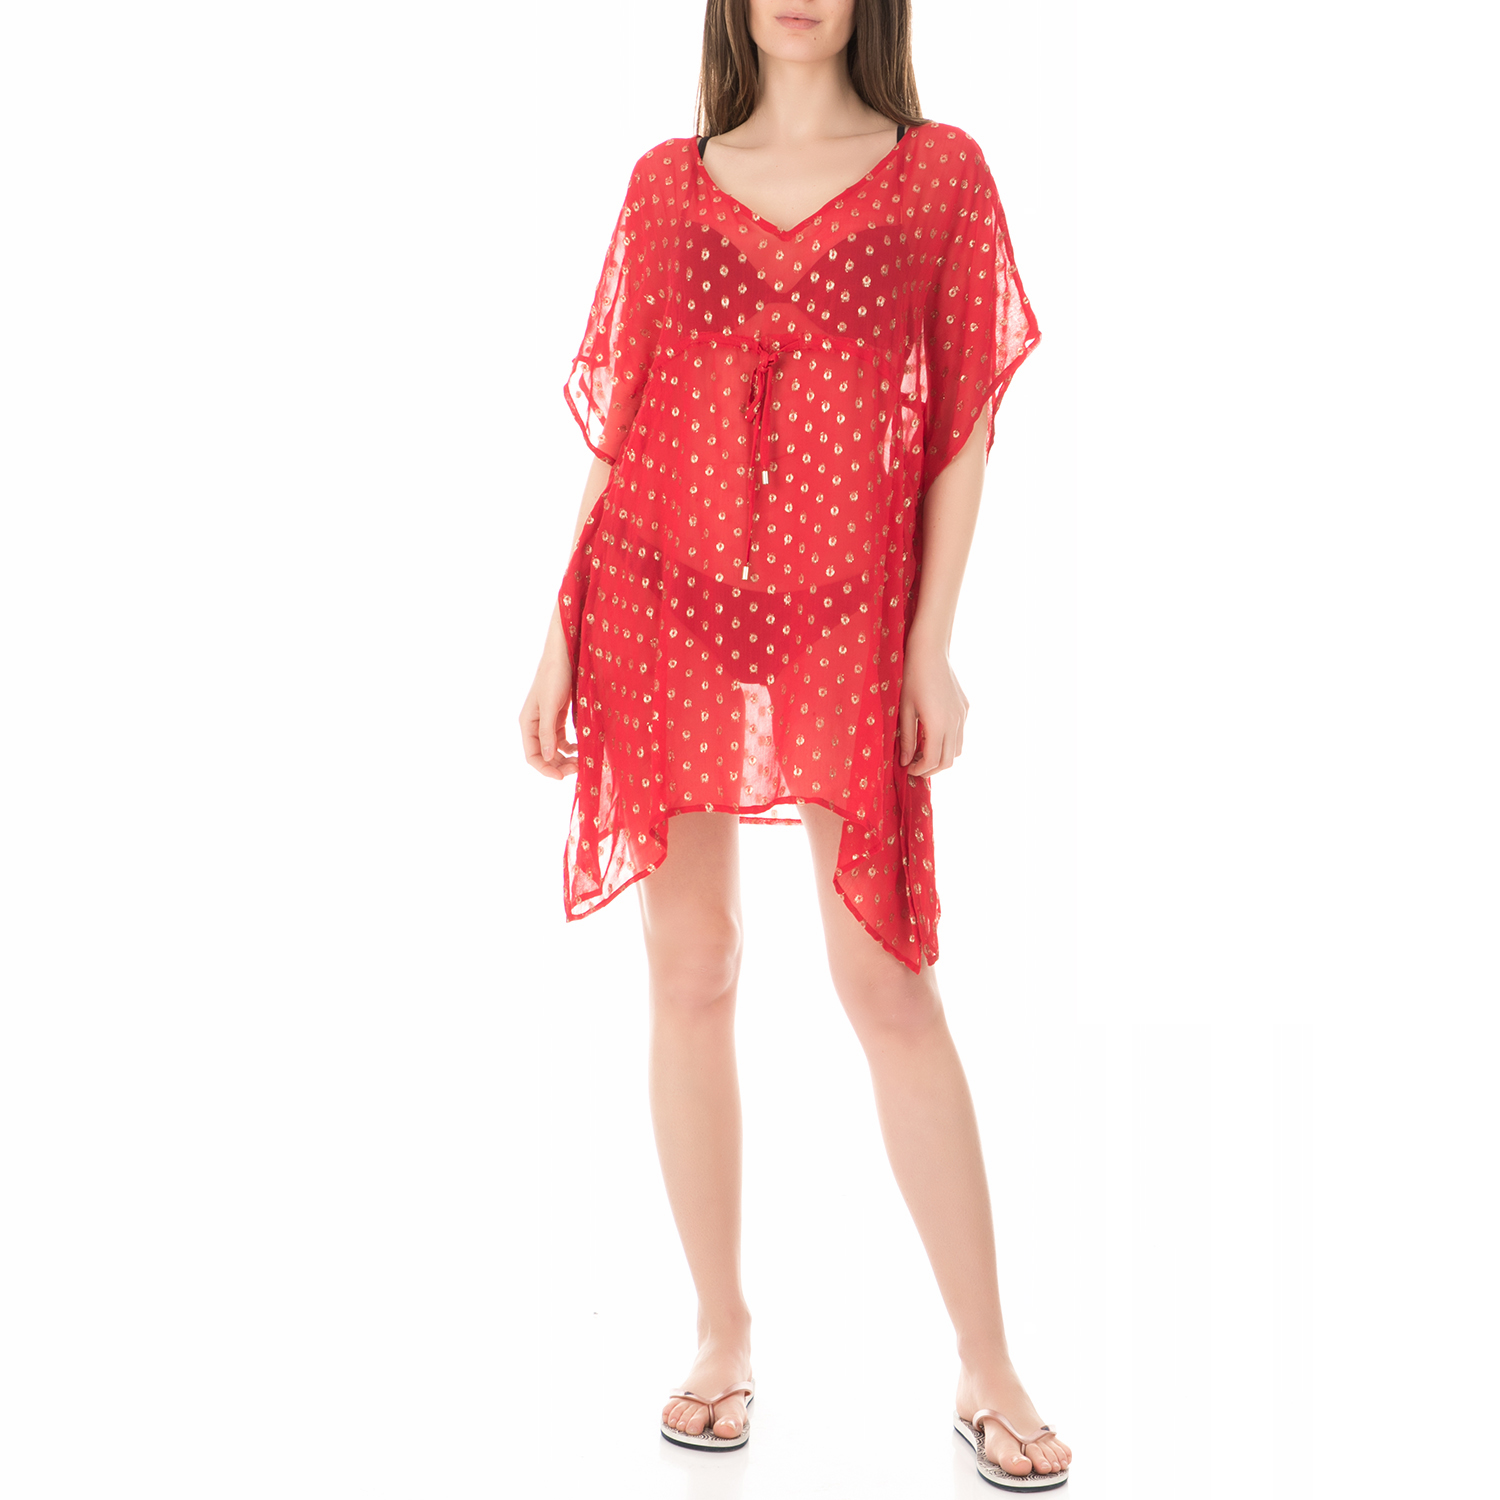 Γυναικεία/Ρούχα/Beachwear HIPANEMA - Γυναικείο καφτάνι HIPANEMA κόκκινο